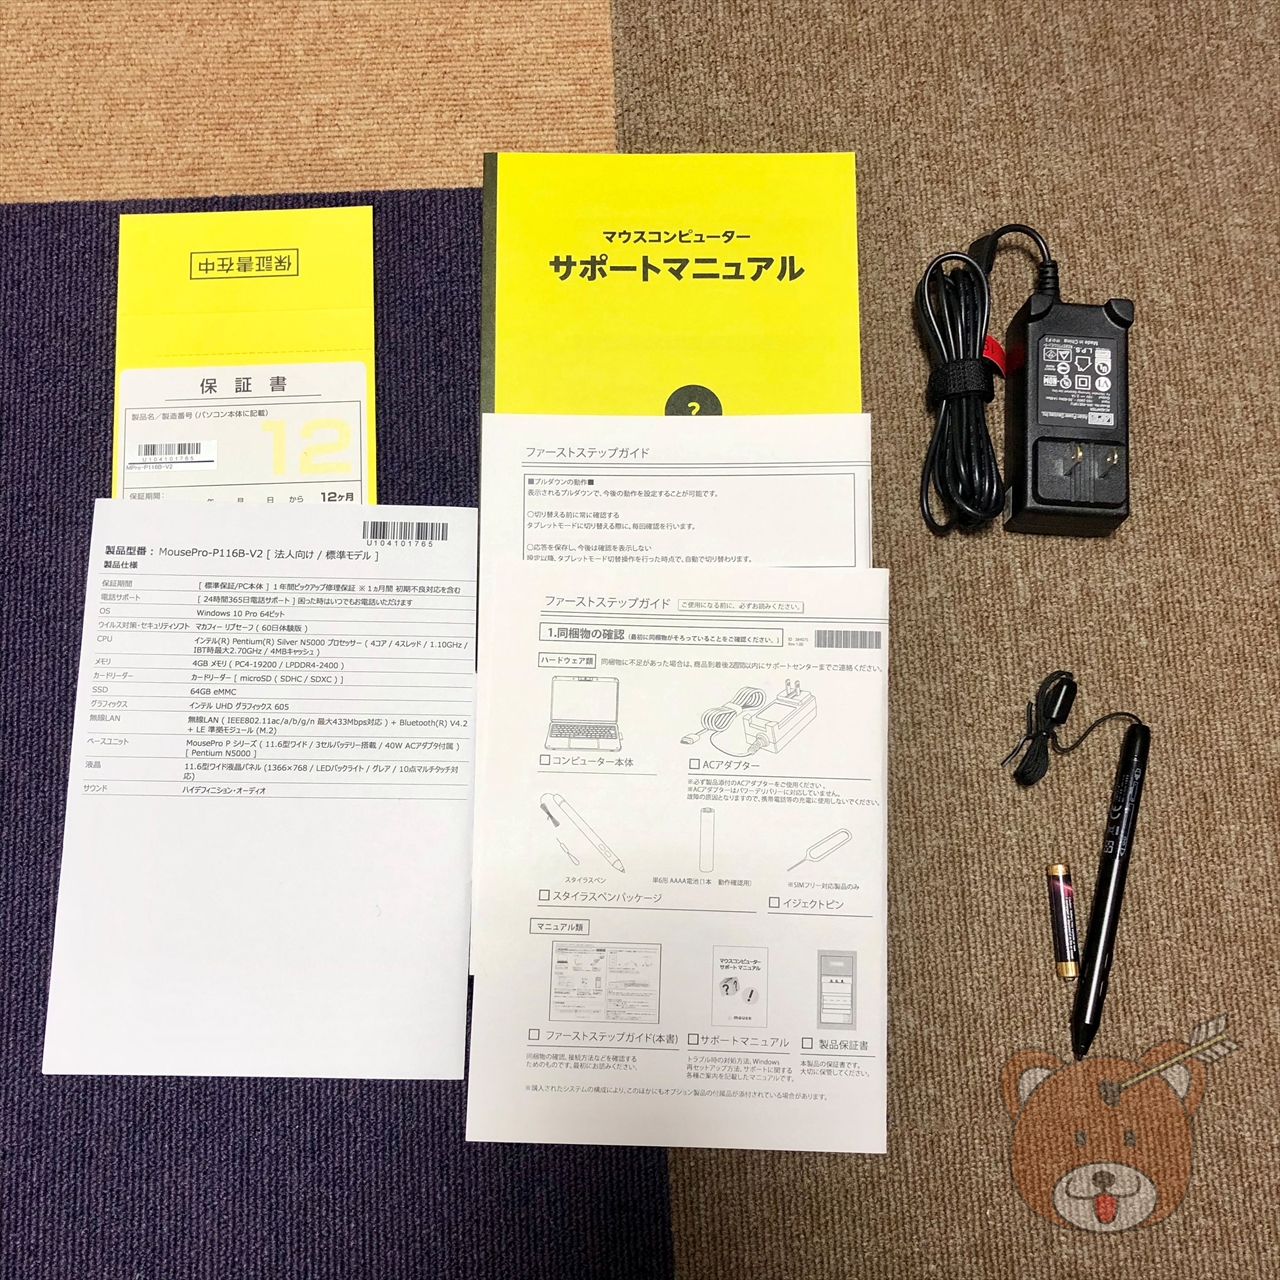 MousePro P116B-V2_Package